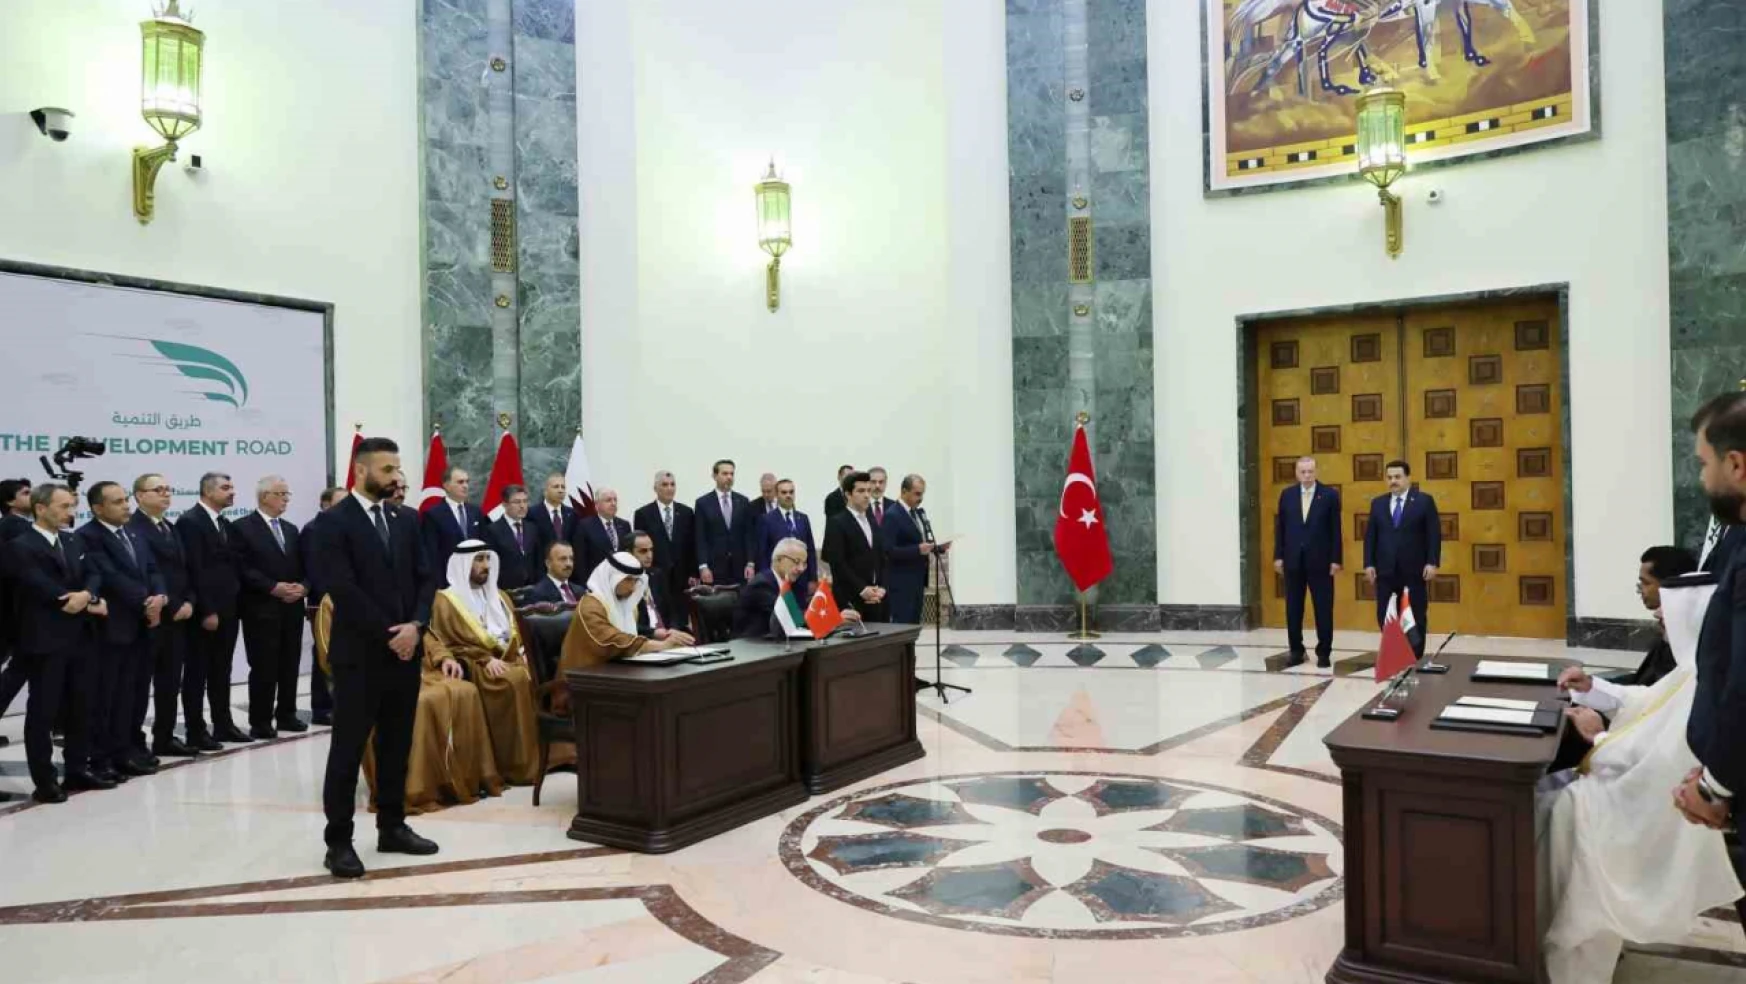 Türkiye, Irak, Katar ve BAE arasında 'Kalkınma Yolu' mutabakat zaptı imzalandı